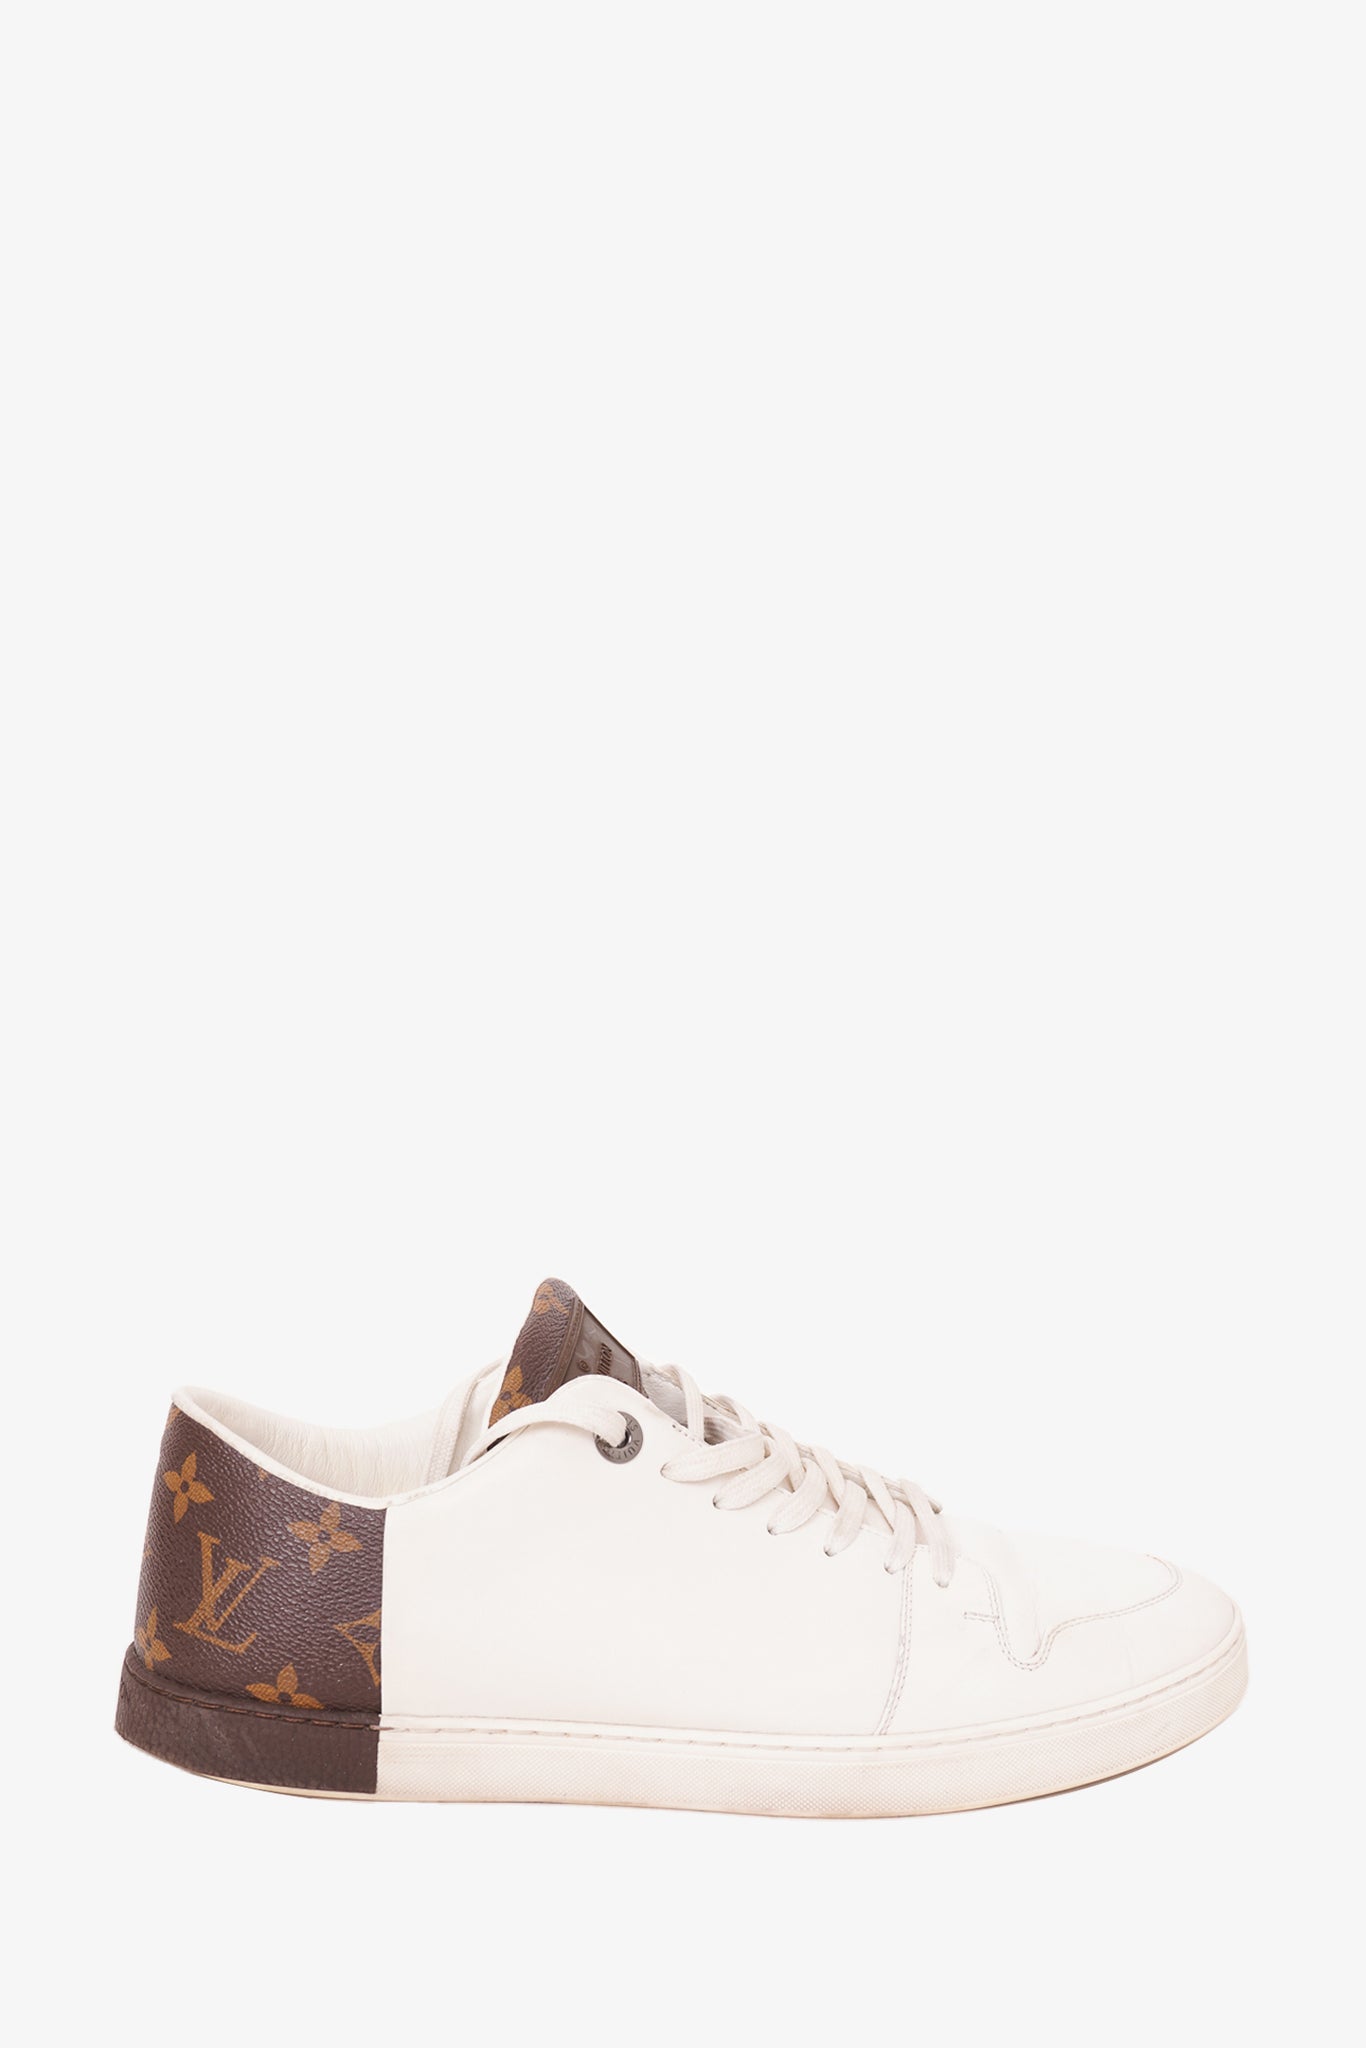 Louis Vuitton Show Up Sneaker BLACK. Size 08.0